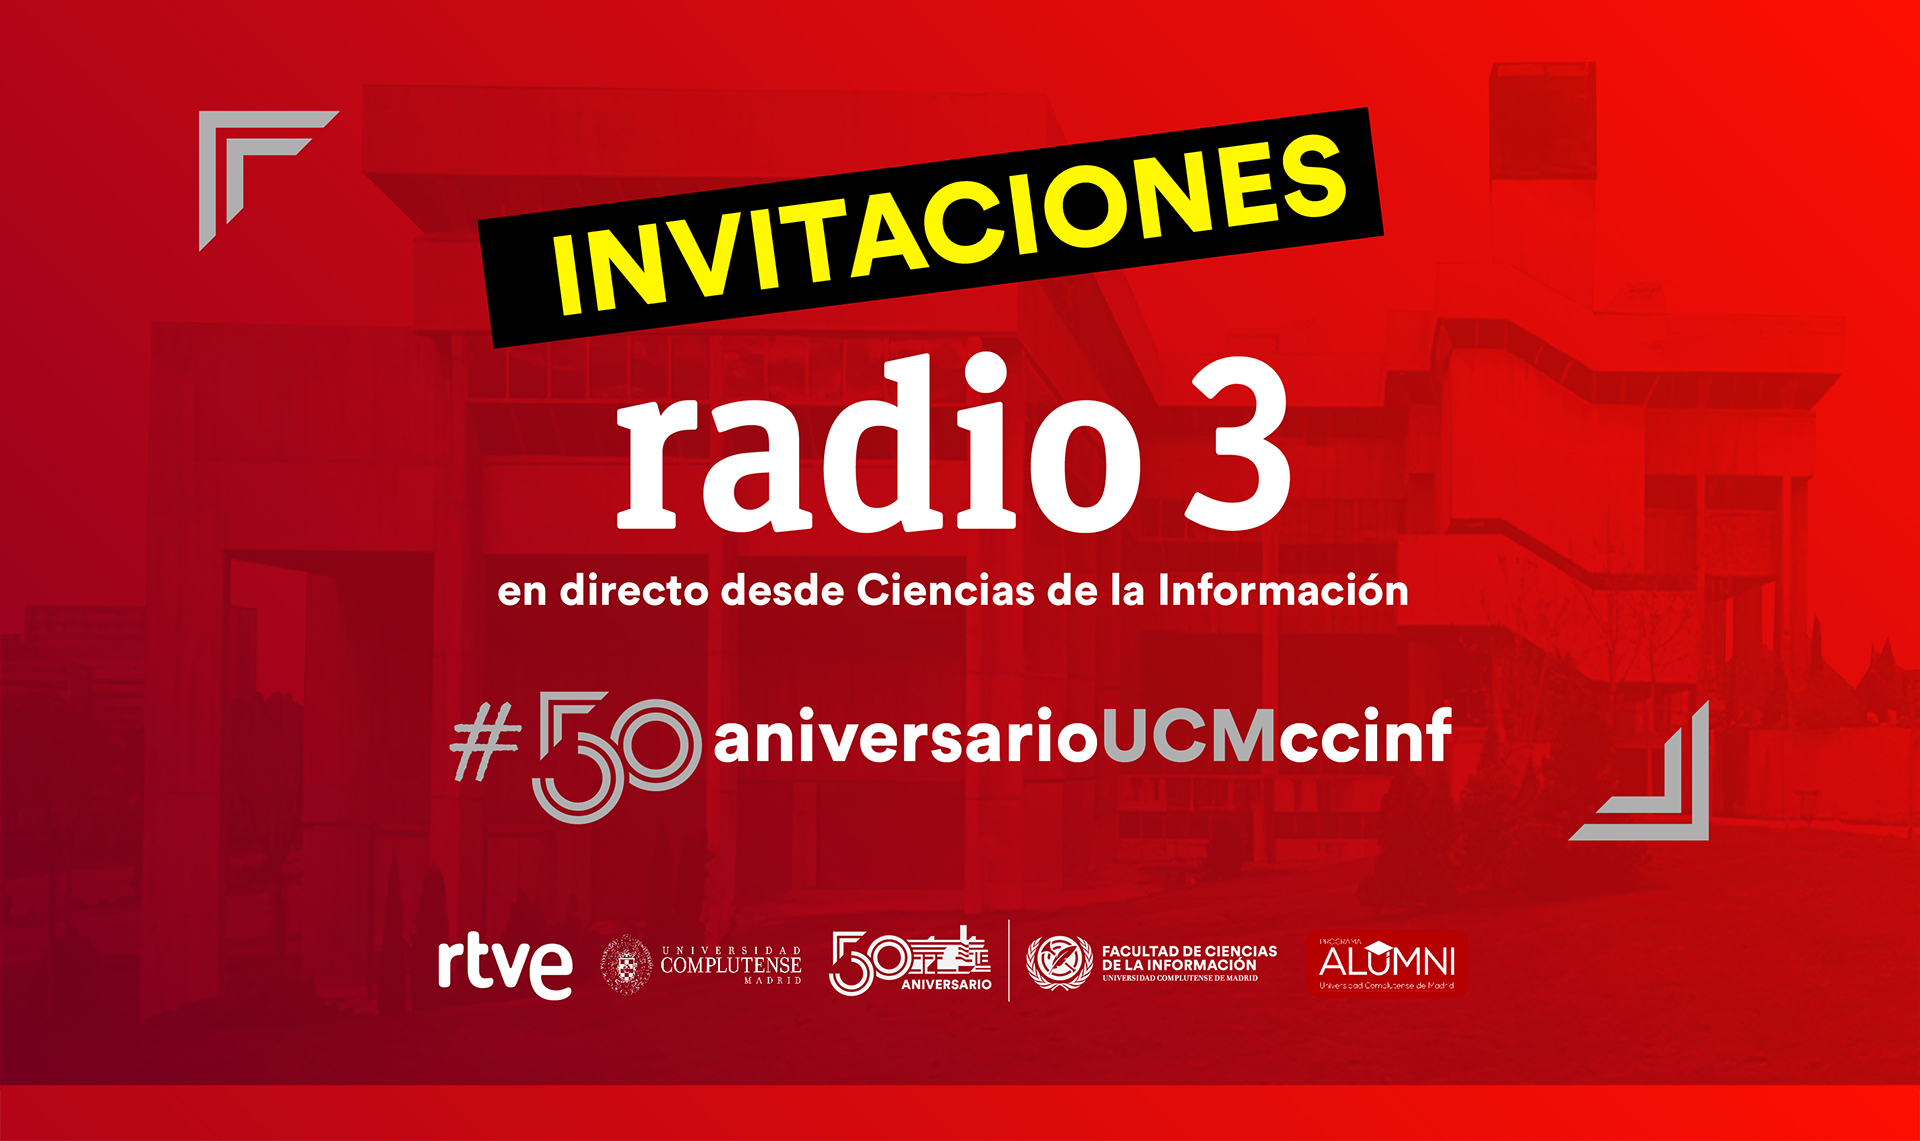 INVITACIONES PARA EL ESPECIAL DE RADIO 3 #50aniversarioUCMccinf